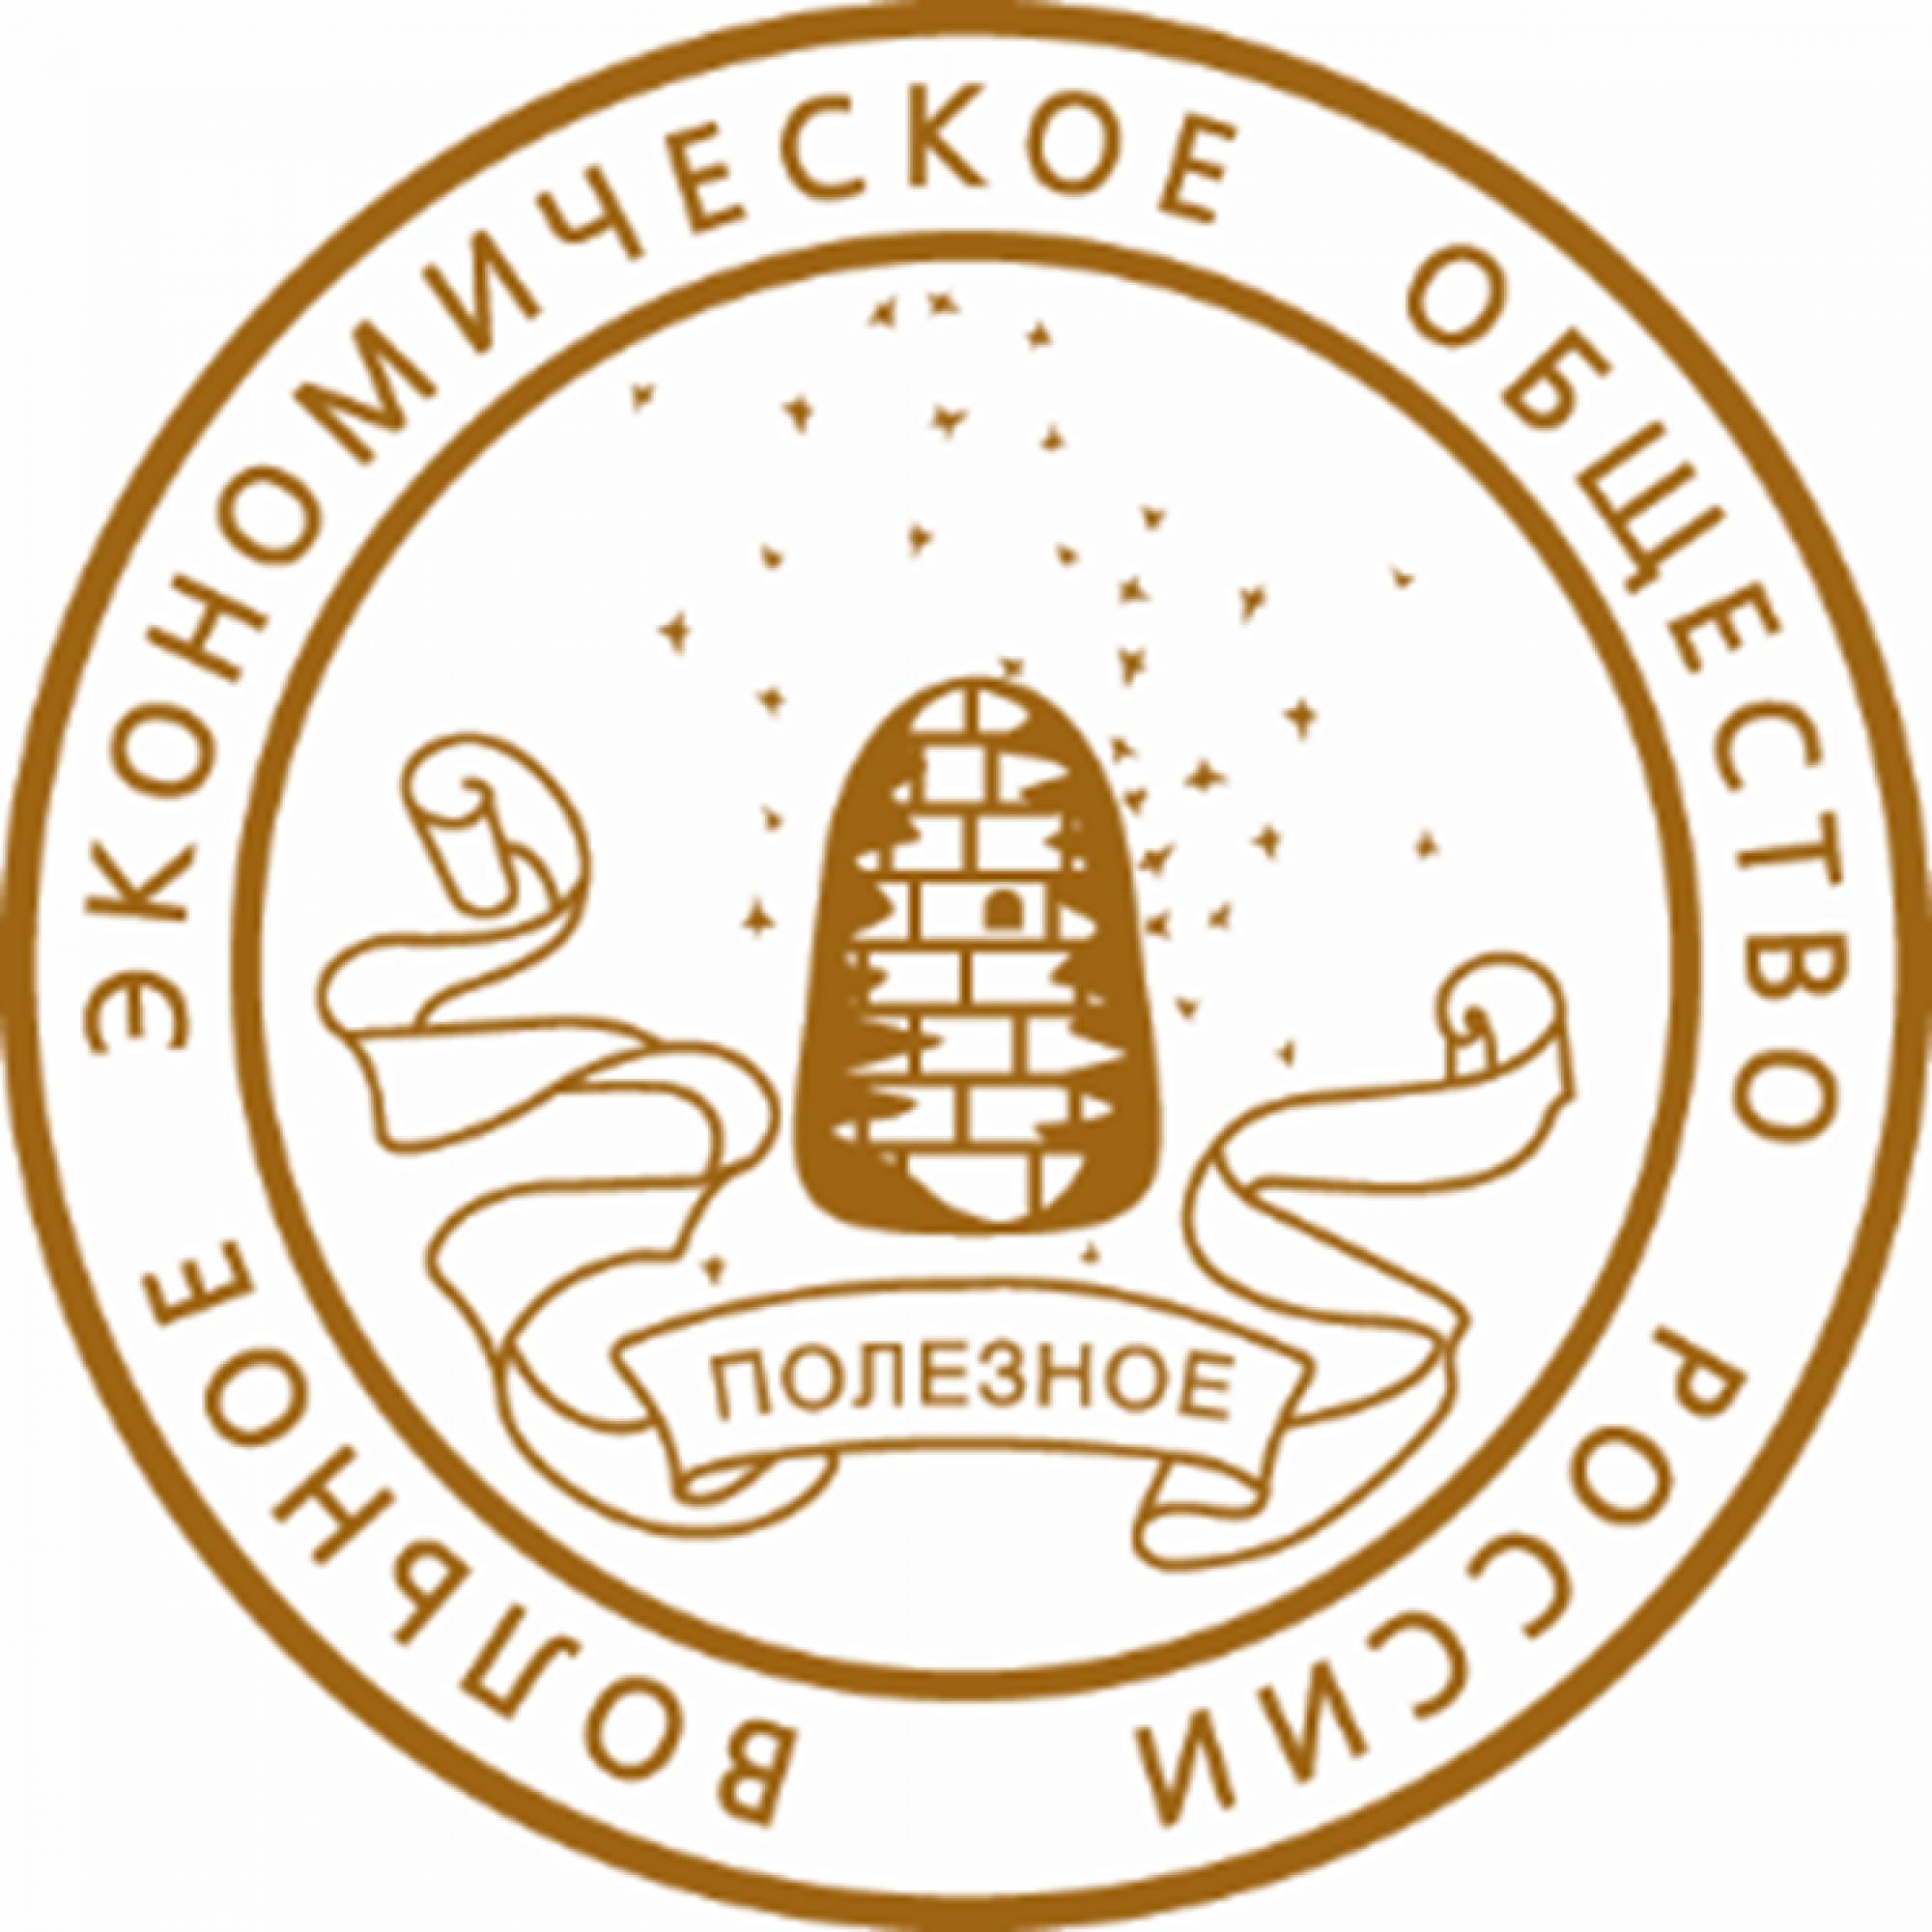 Вольное экономическое общество (ВЭО). Эмблема вольного экономического общества. Логотип ВЭО России. Волна экономическое общемтво. Экономическое общество представители